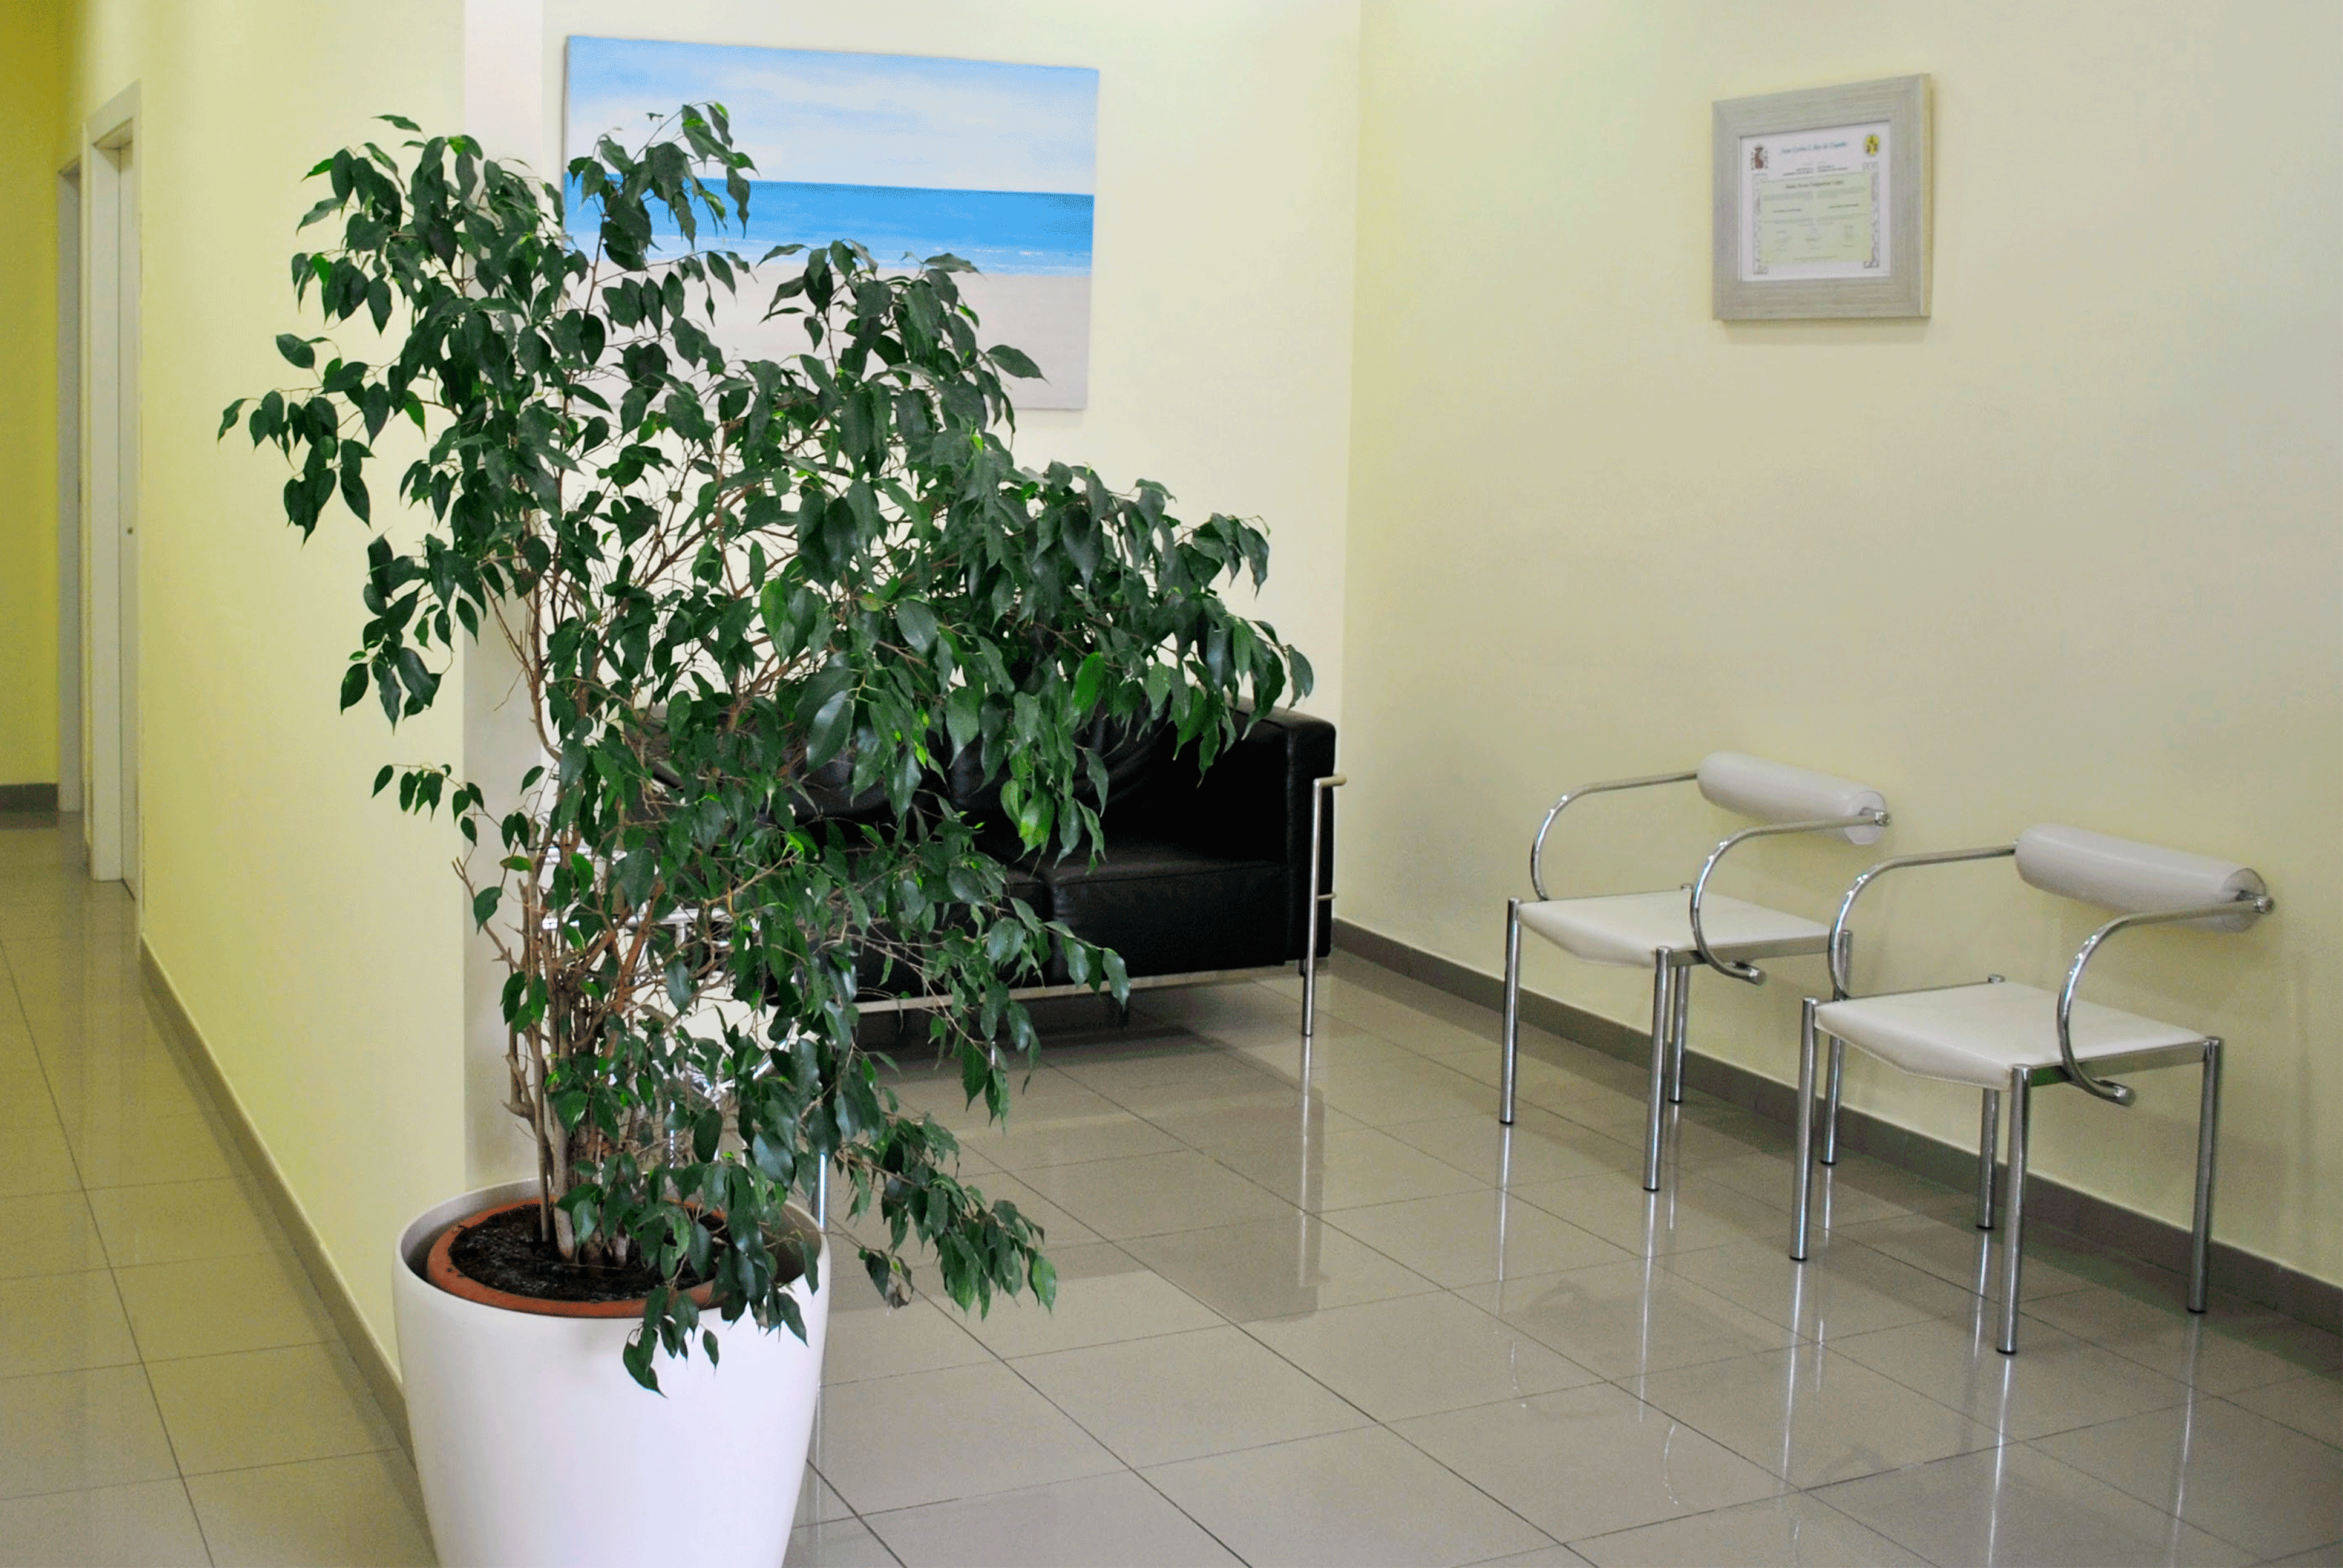 sala de espera